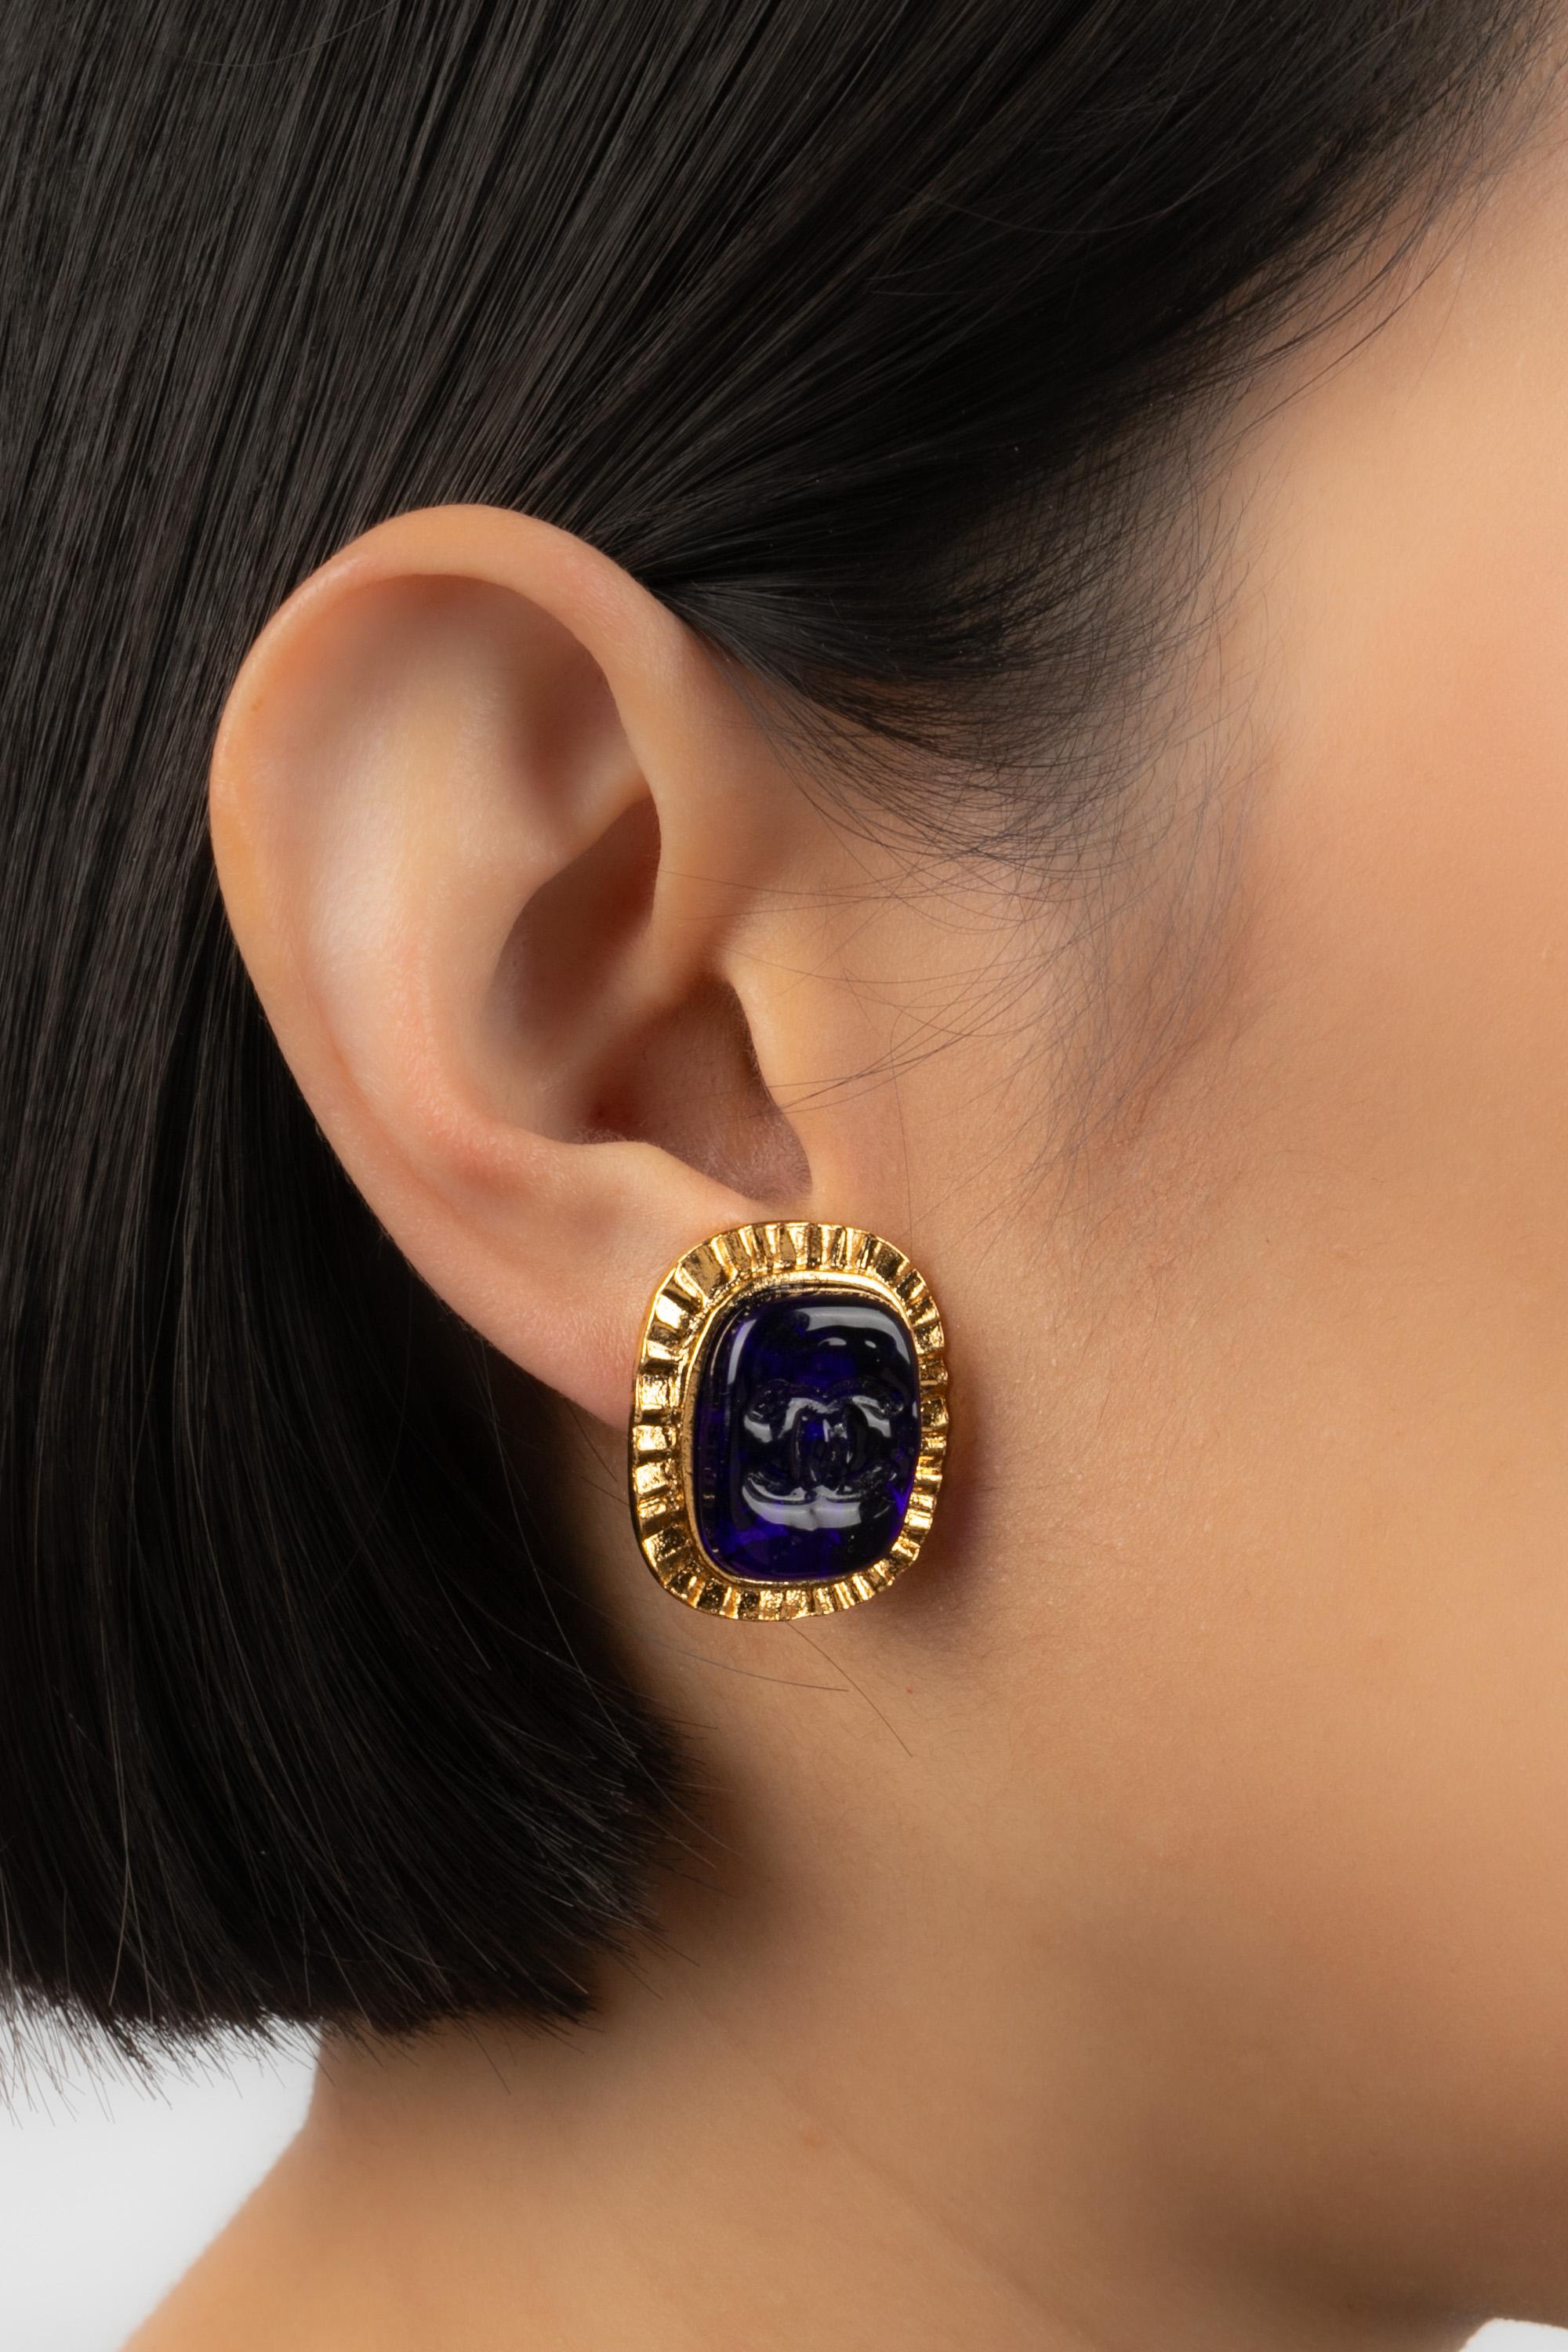 Chanel earrings 1995 2